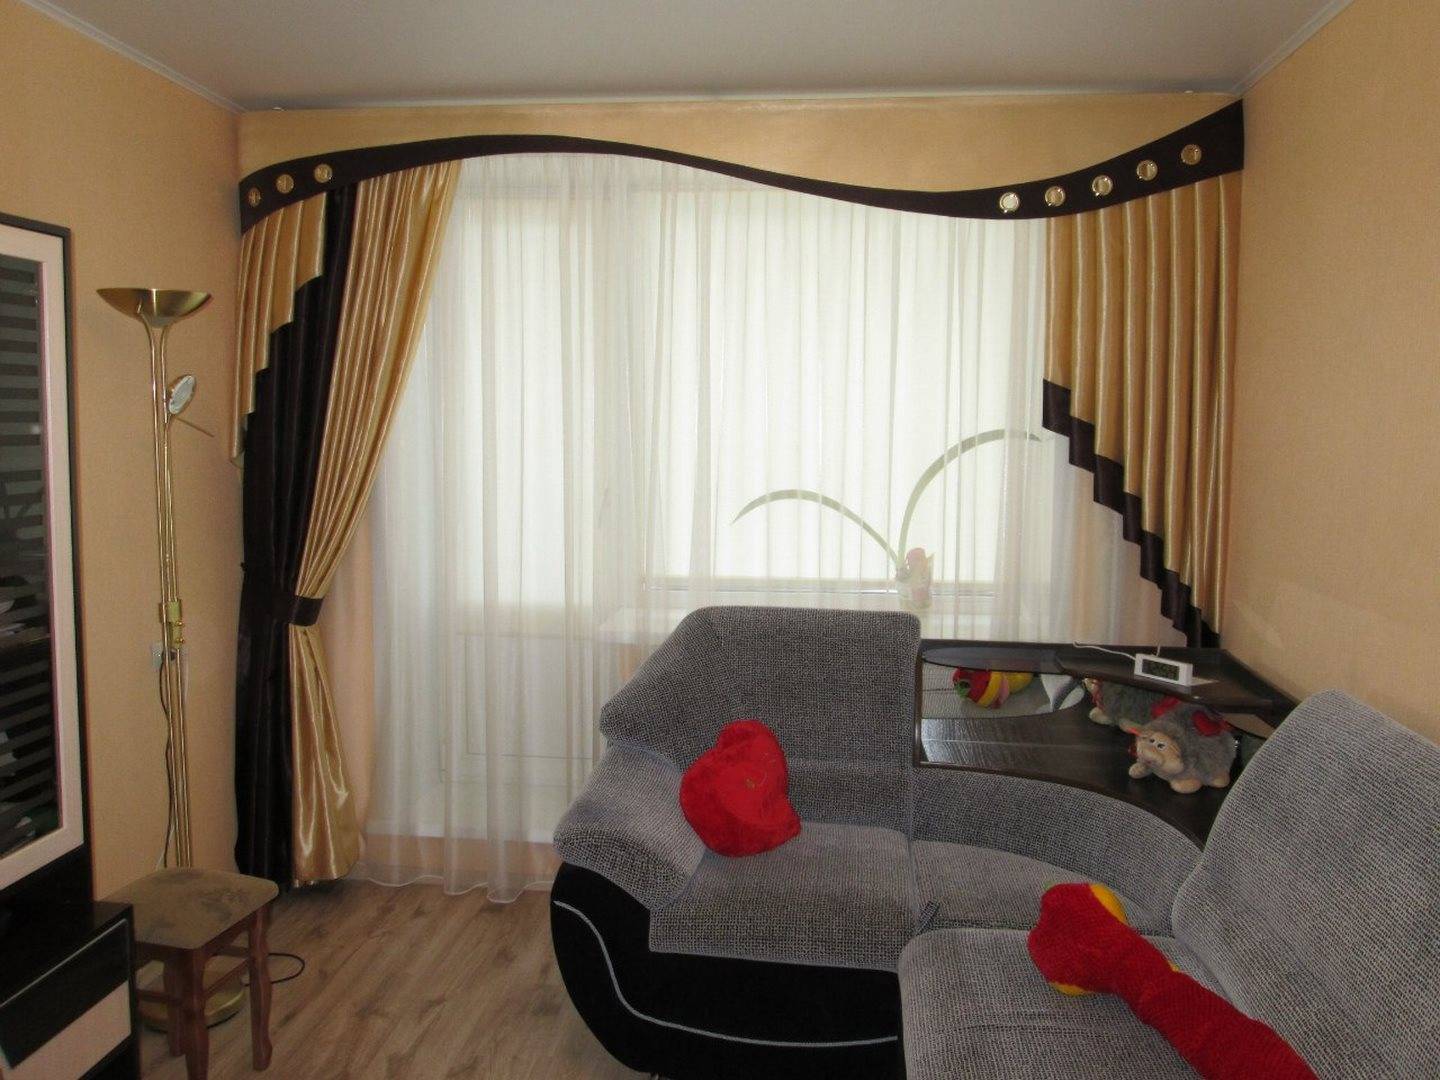 Ламбрекены для зала: современный дизайн ламбрекенов для красивых штор в гостиной